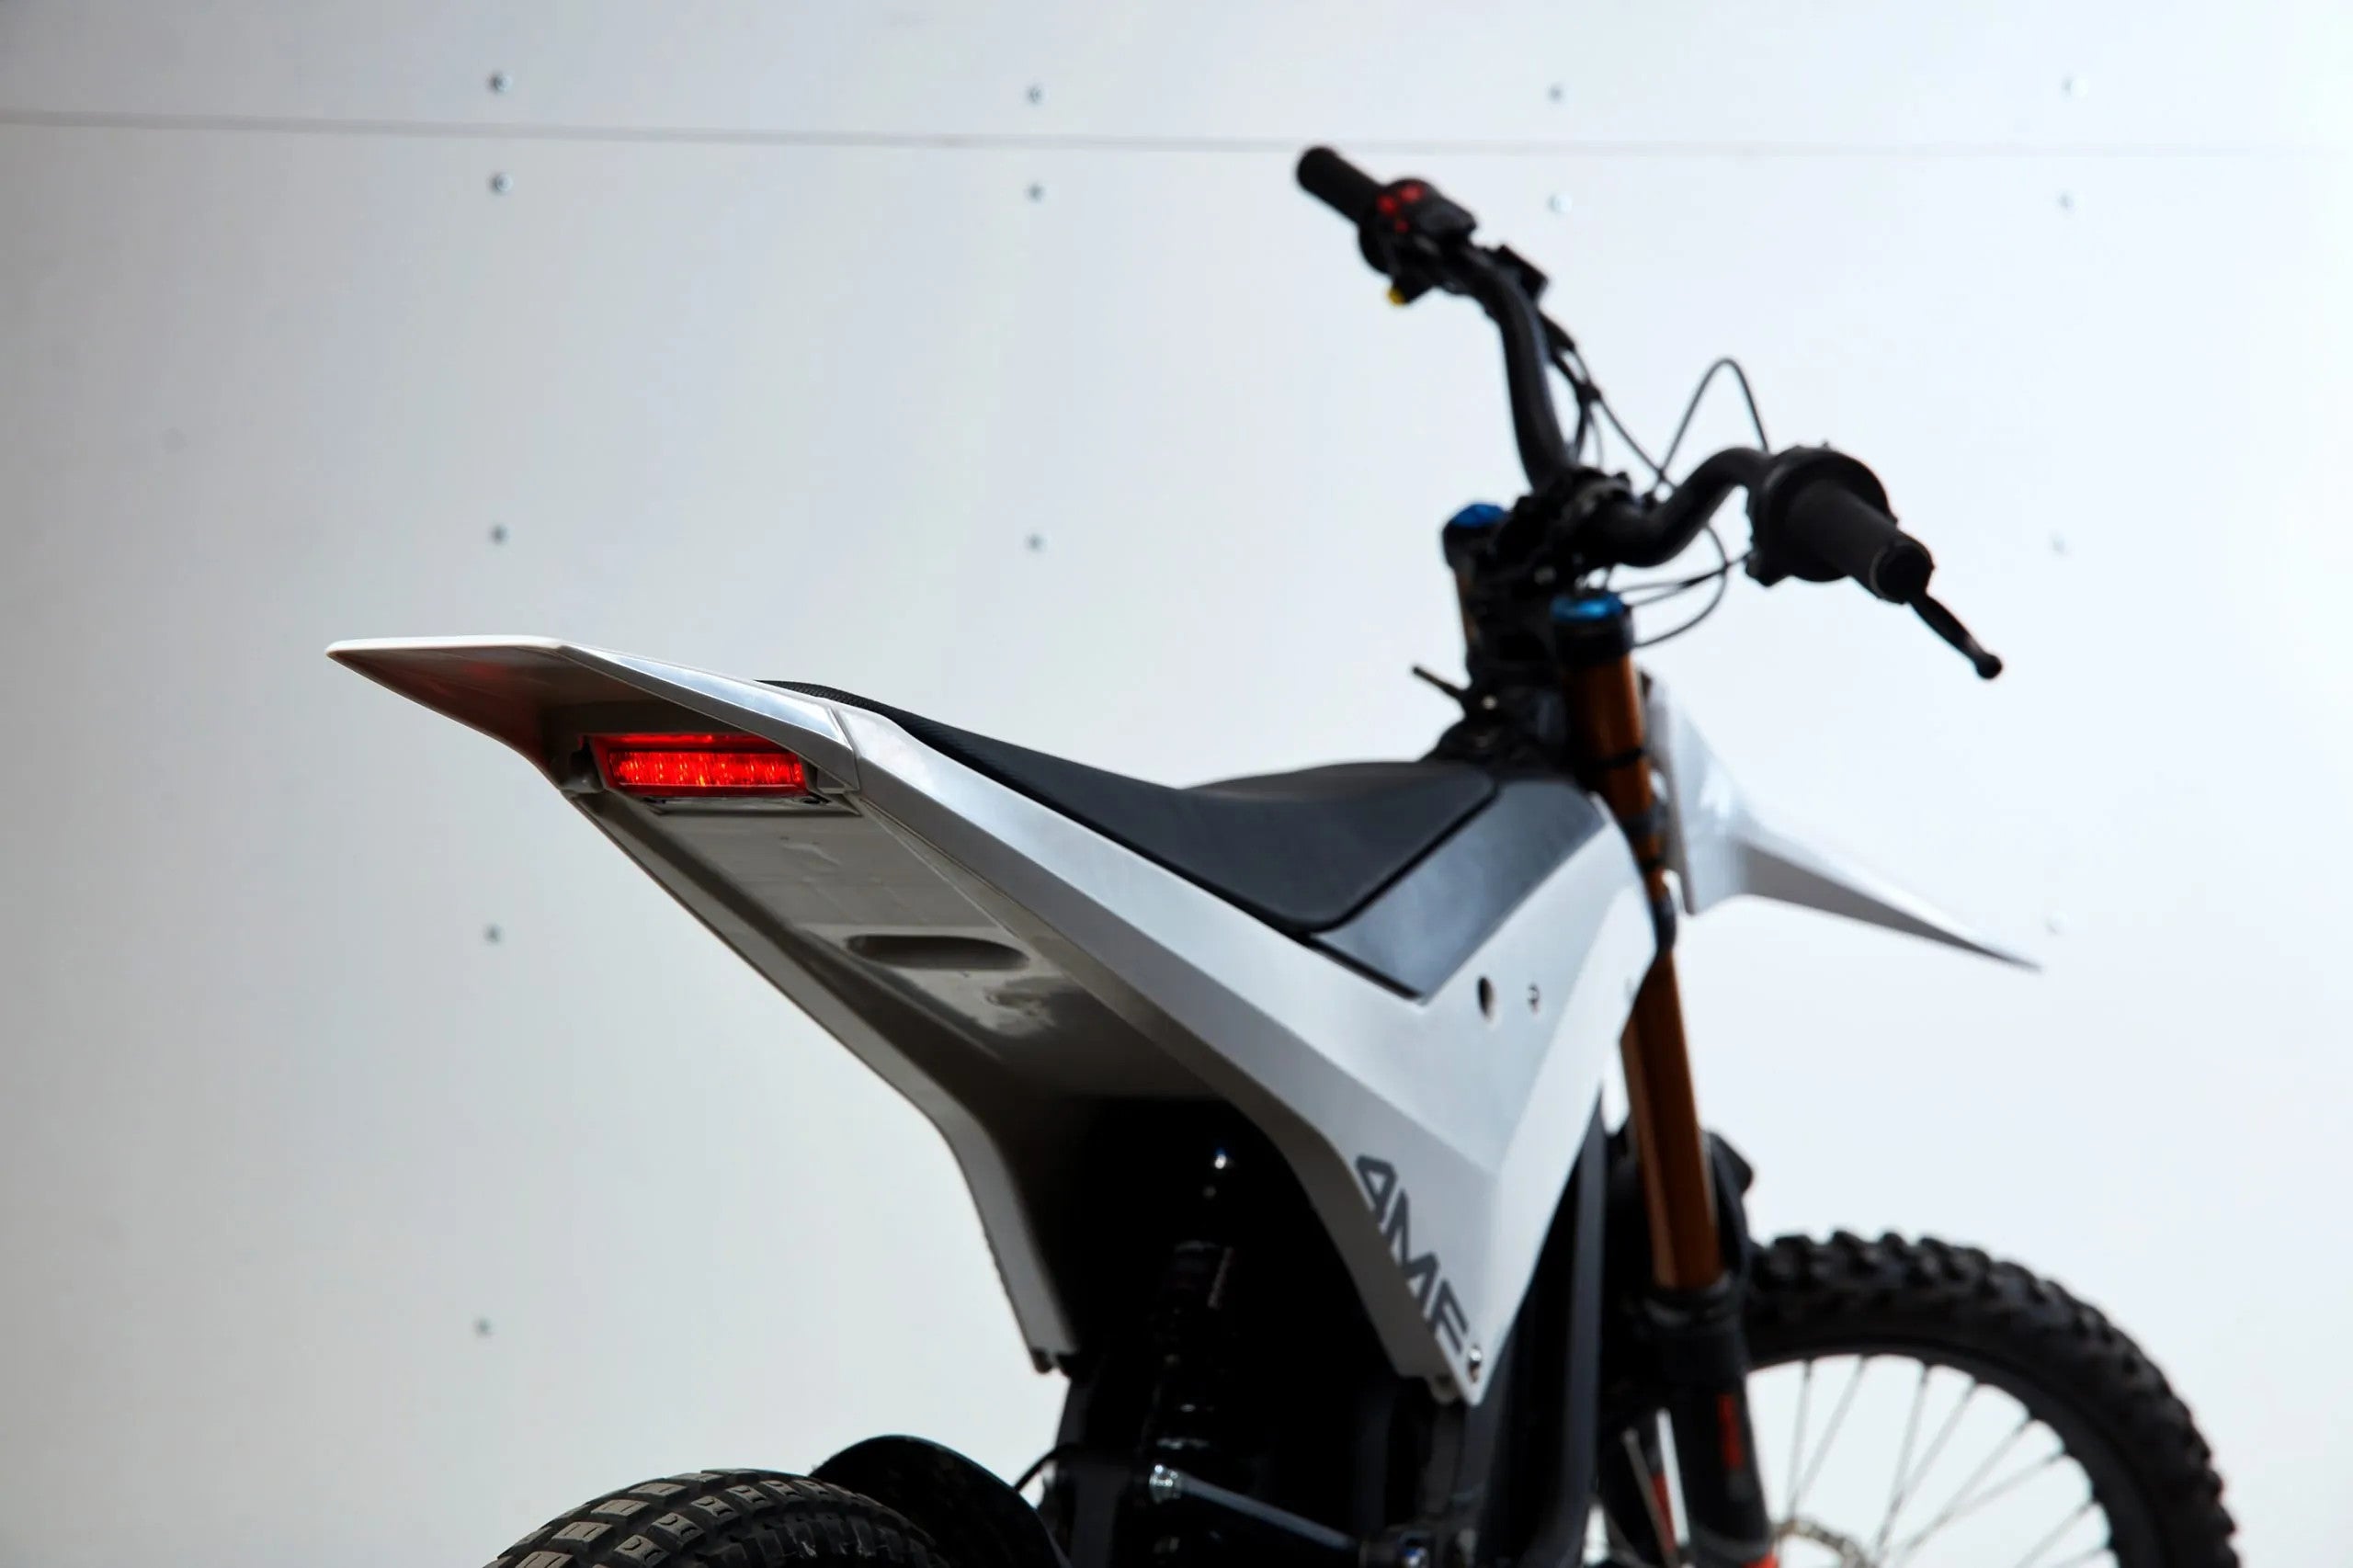 4MF Moto Kit - Surron Seat & Plastics Kit